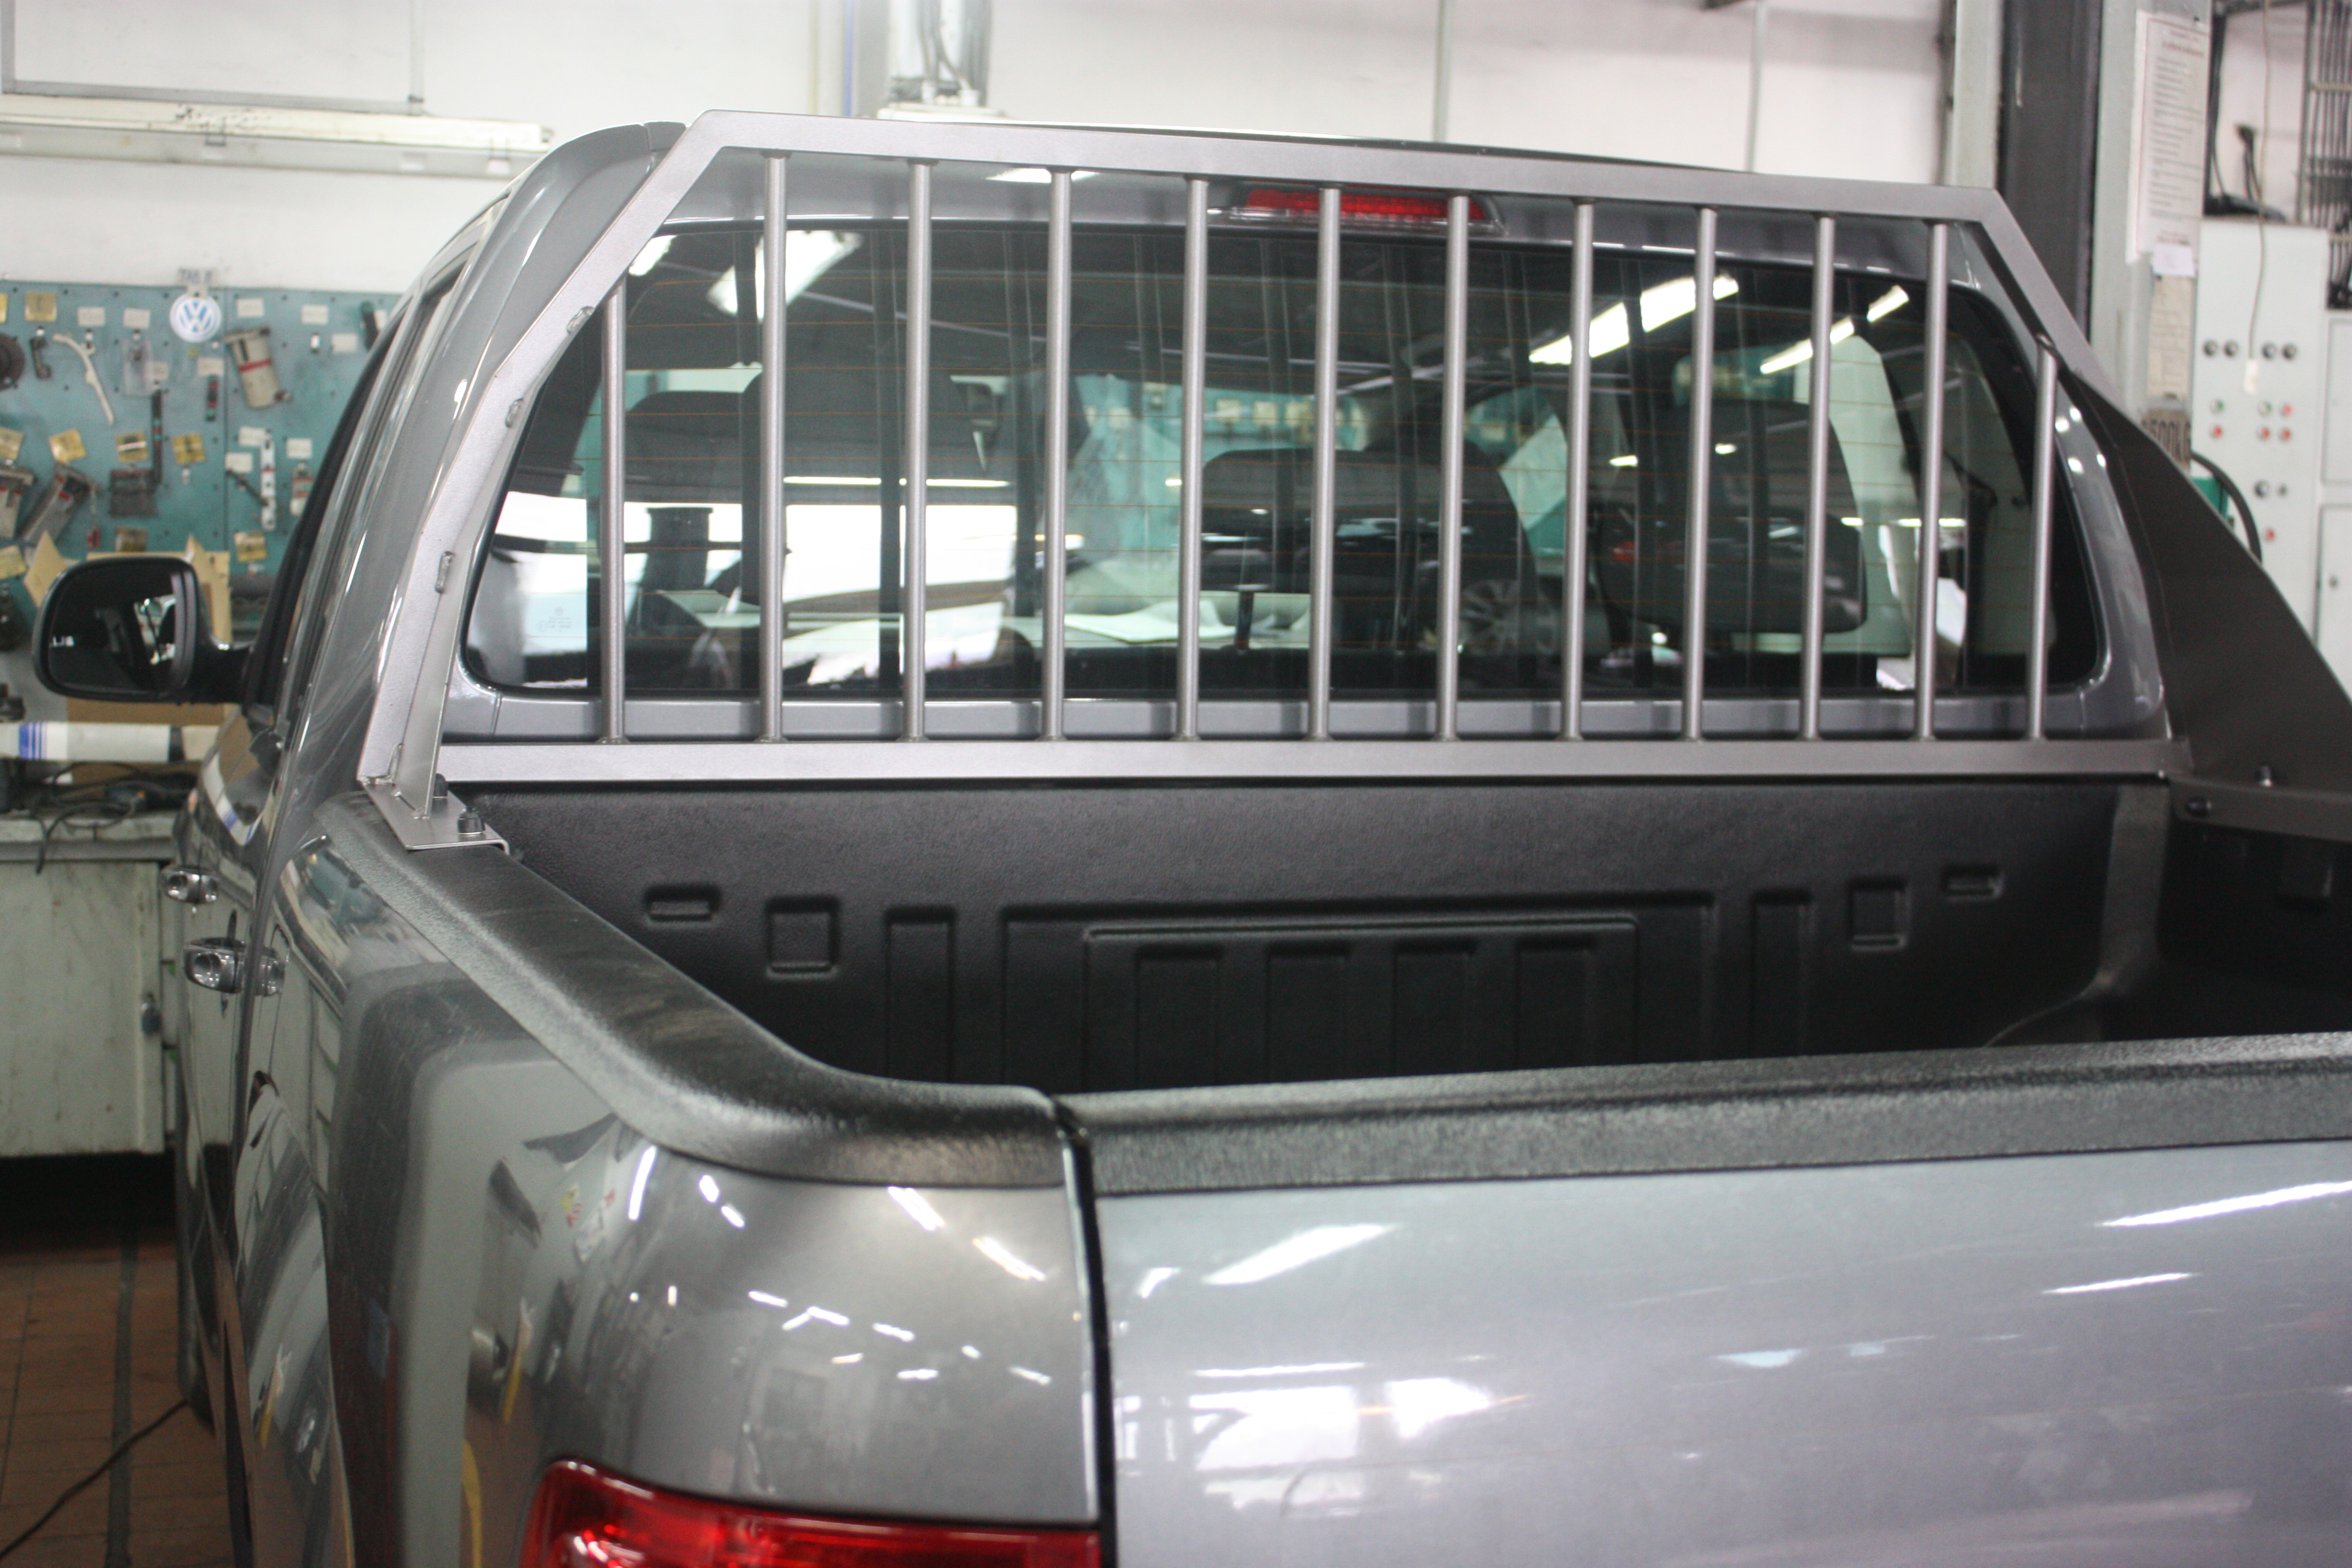 Ochranný rám za kabinou vozu VW Amarok a plastová vana s lemy. Ideální kombinace doplňků pro pracovní využití vašeho vozu. Vozit zrní pro žabanty a táák..